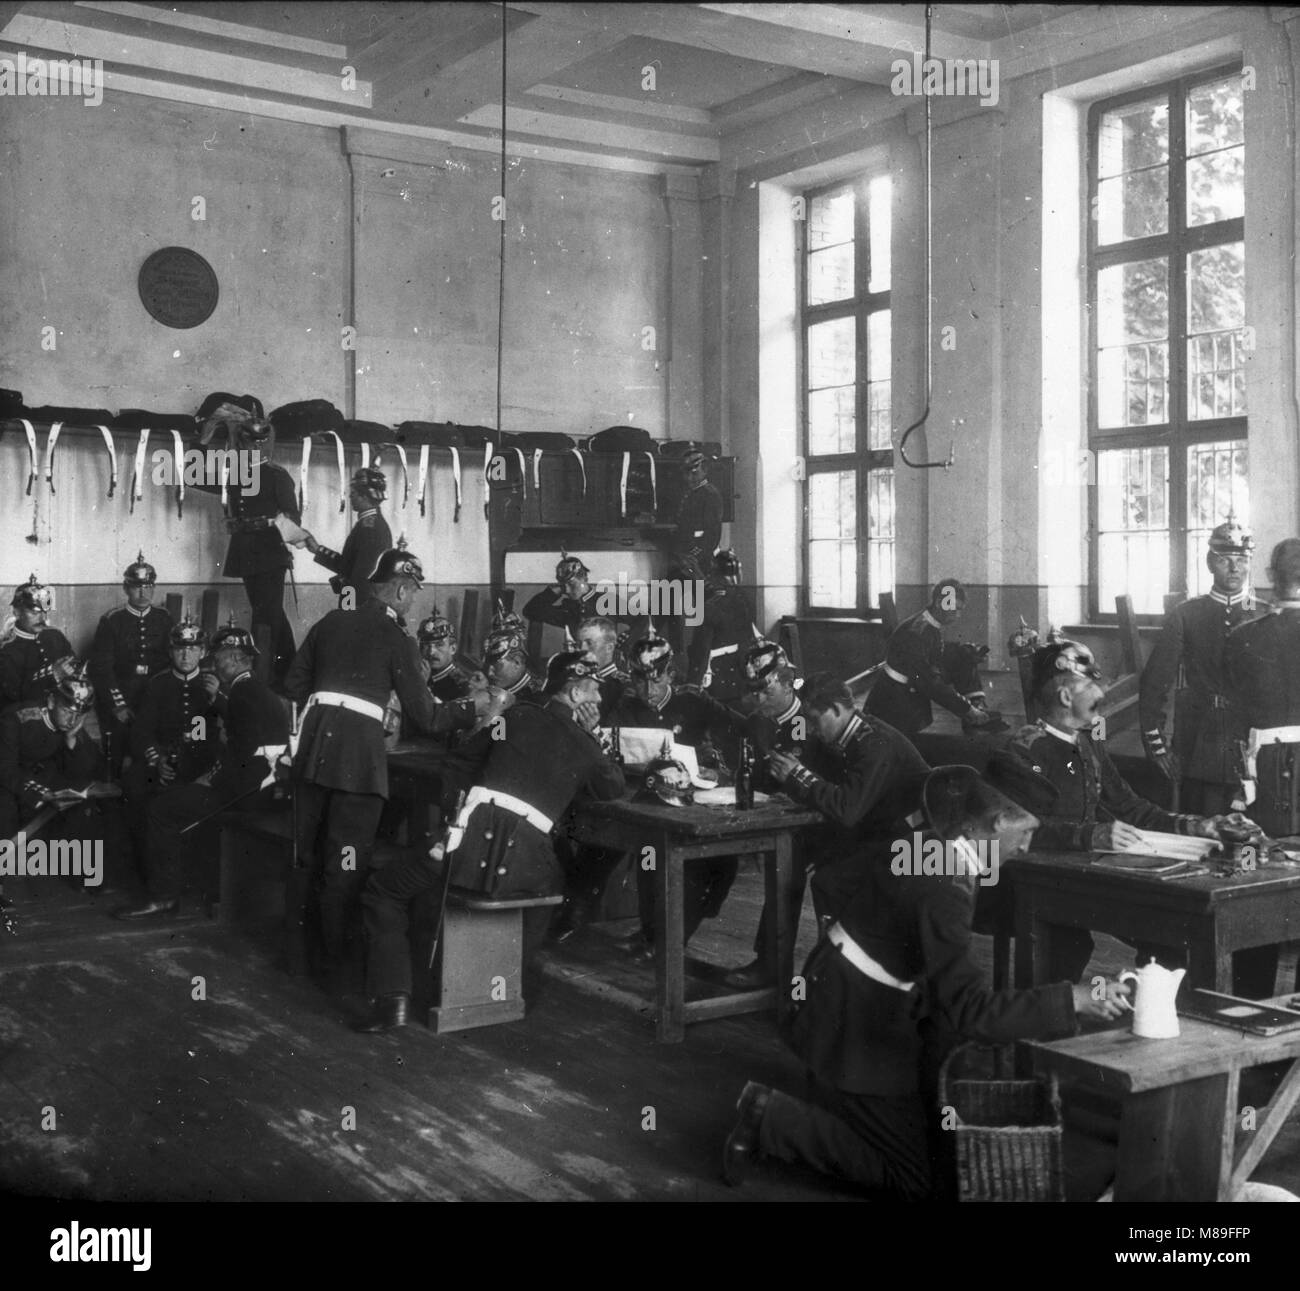 Officiers dans les casernes, Berlin, Allemagne, 1907 Banque D'Images